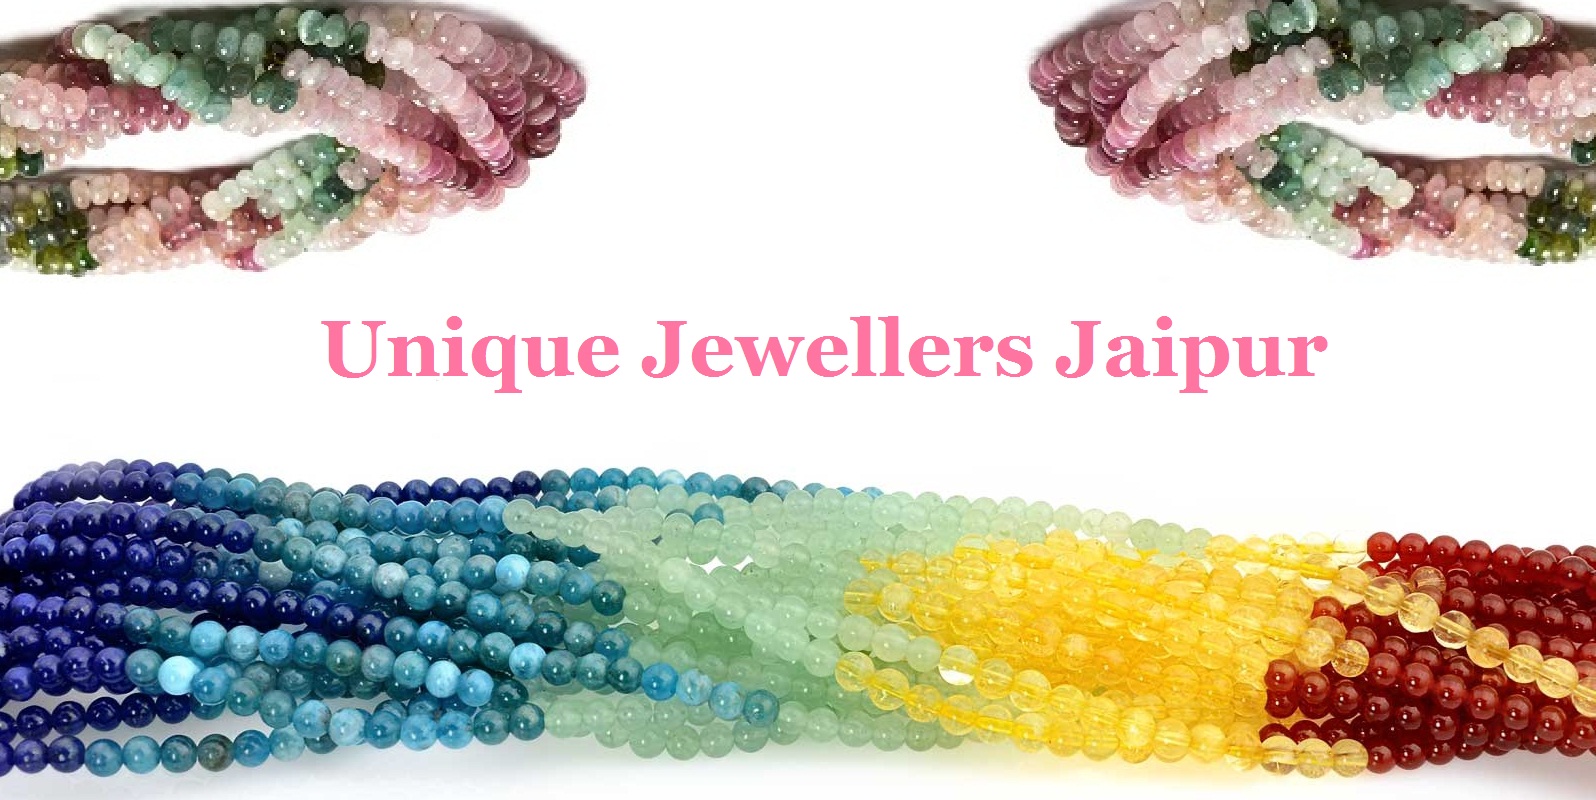 Unique Jewellers Jaipur